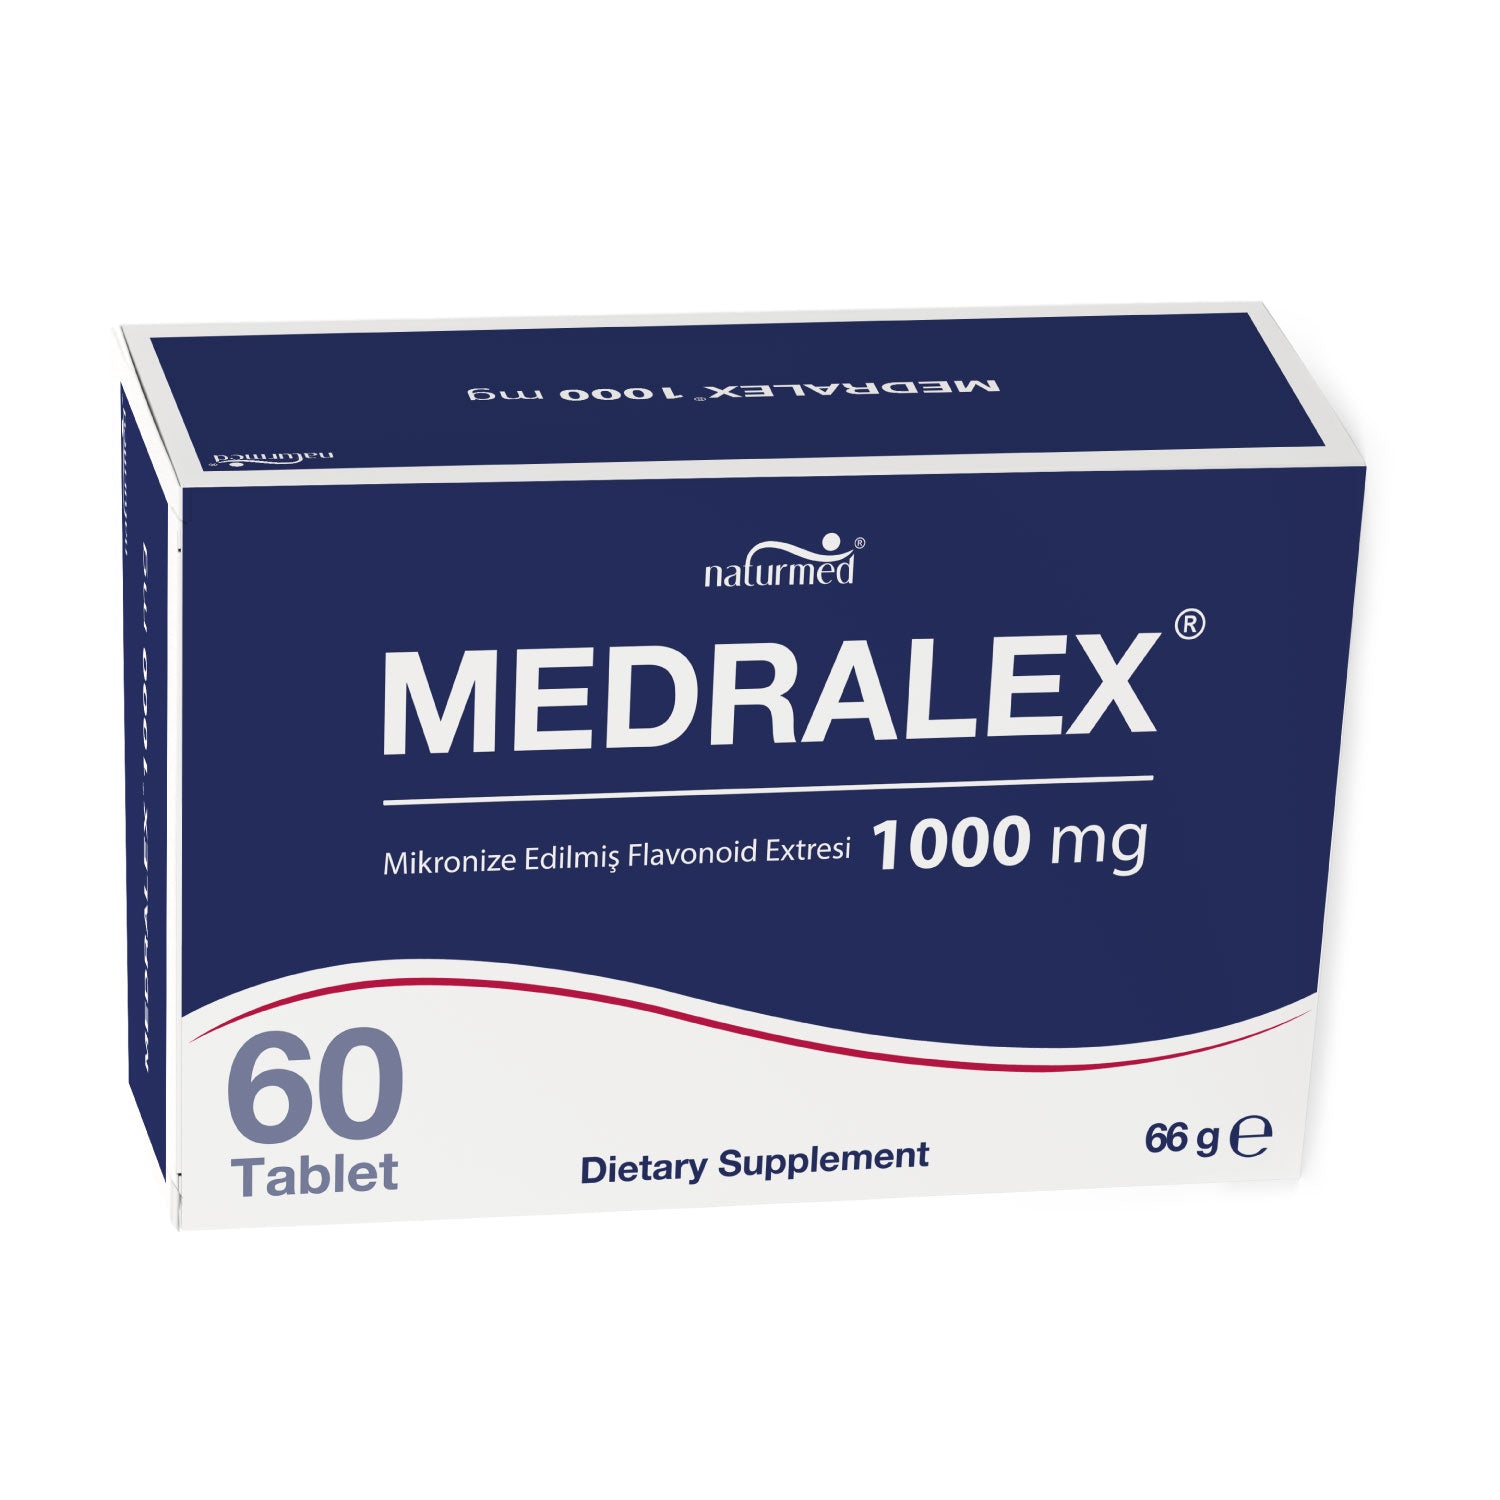 Medralex® Tablet